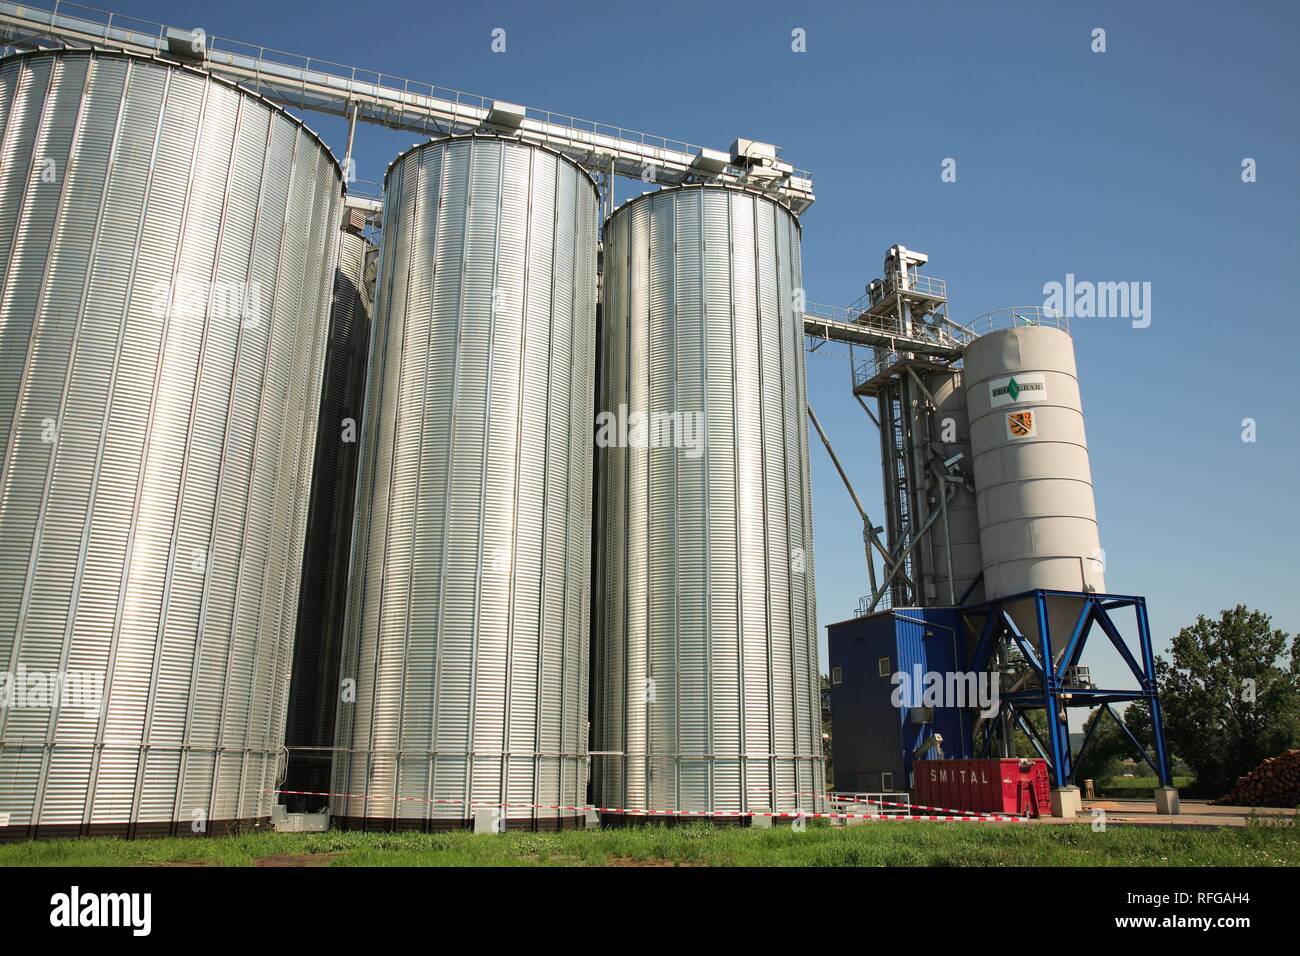 Les silos de stockage de céréales pour l'agriculture Banque D'Images